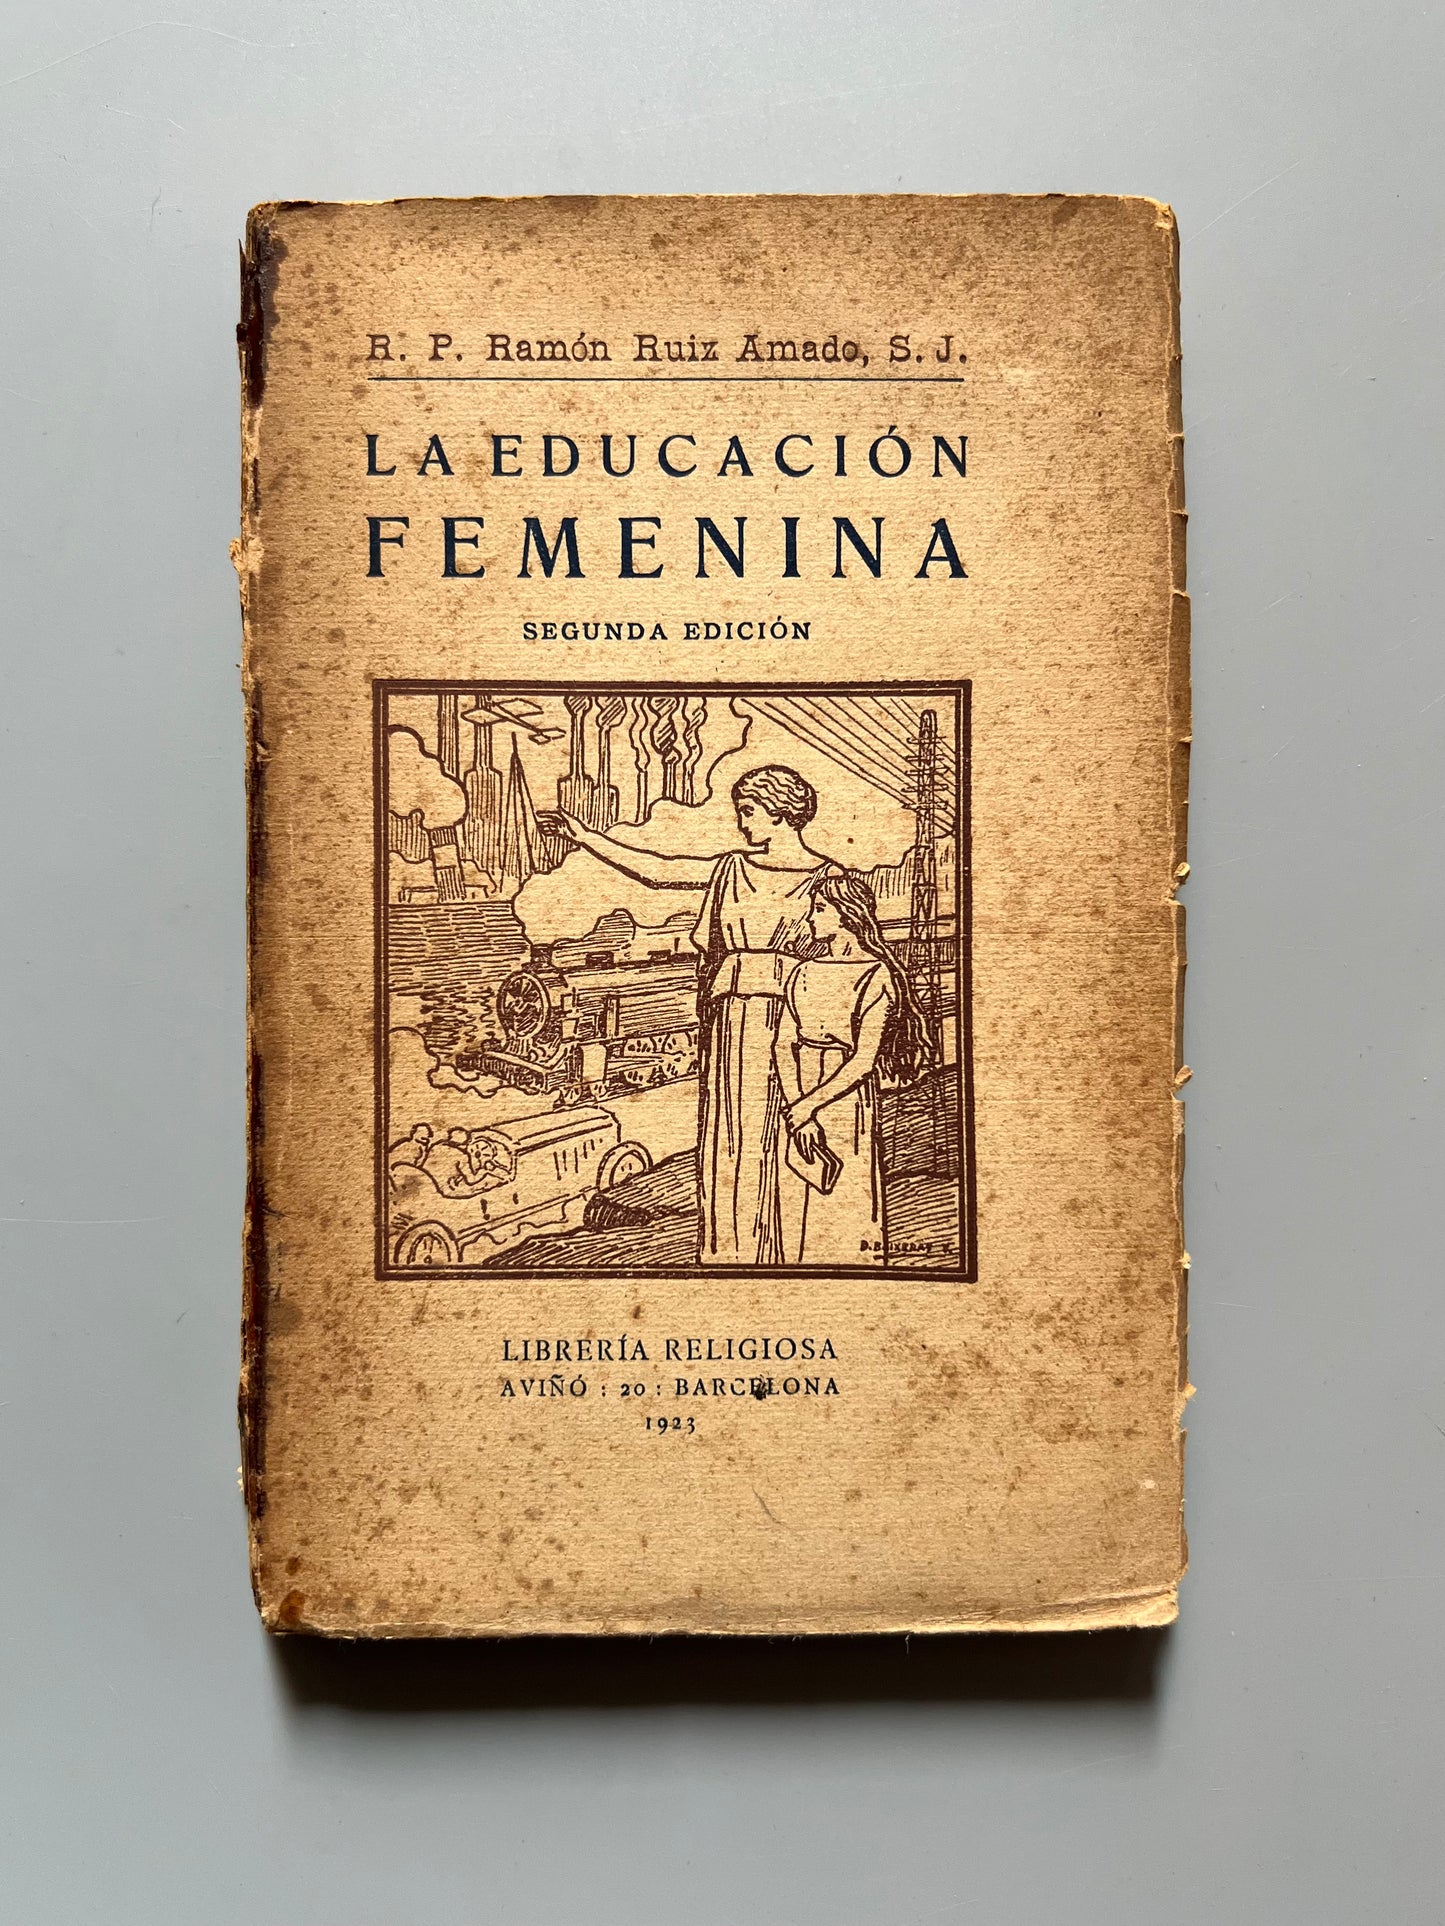 La educación femenina, R. P. Ramón Ruiz Amado - Librería Religiosa, 1923